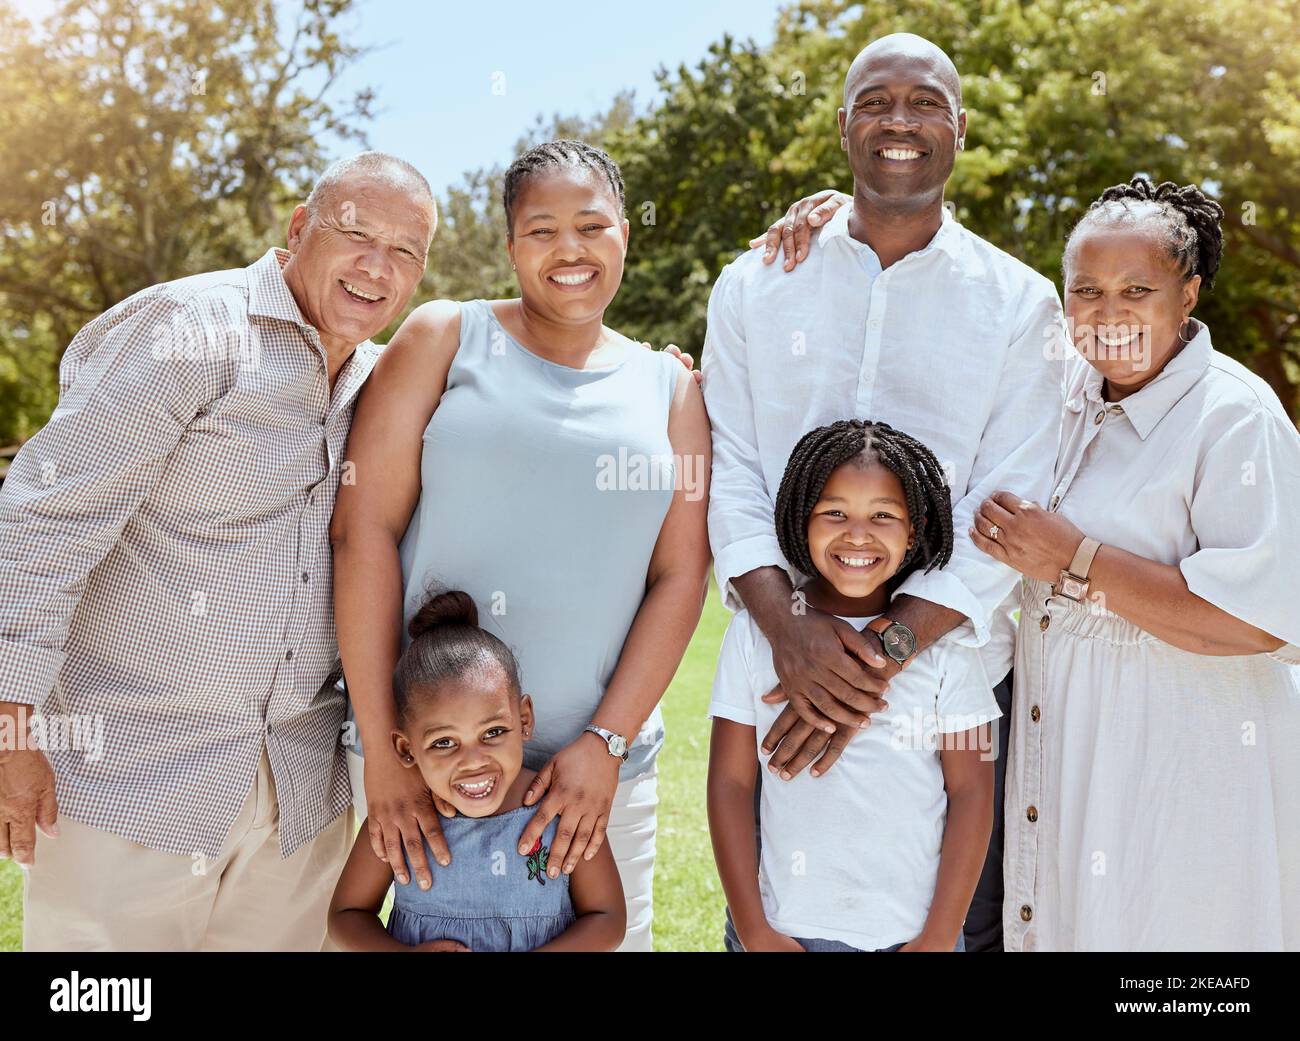 Ritratto di felice famiglia nera con sorriso nel parco, giardino o luogo picnic all'aperto. Uomini, donne e bambini insieme sull'erba in occasione di un evento di famiglia e fare Foto Stock